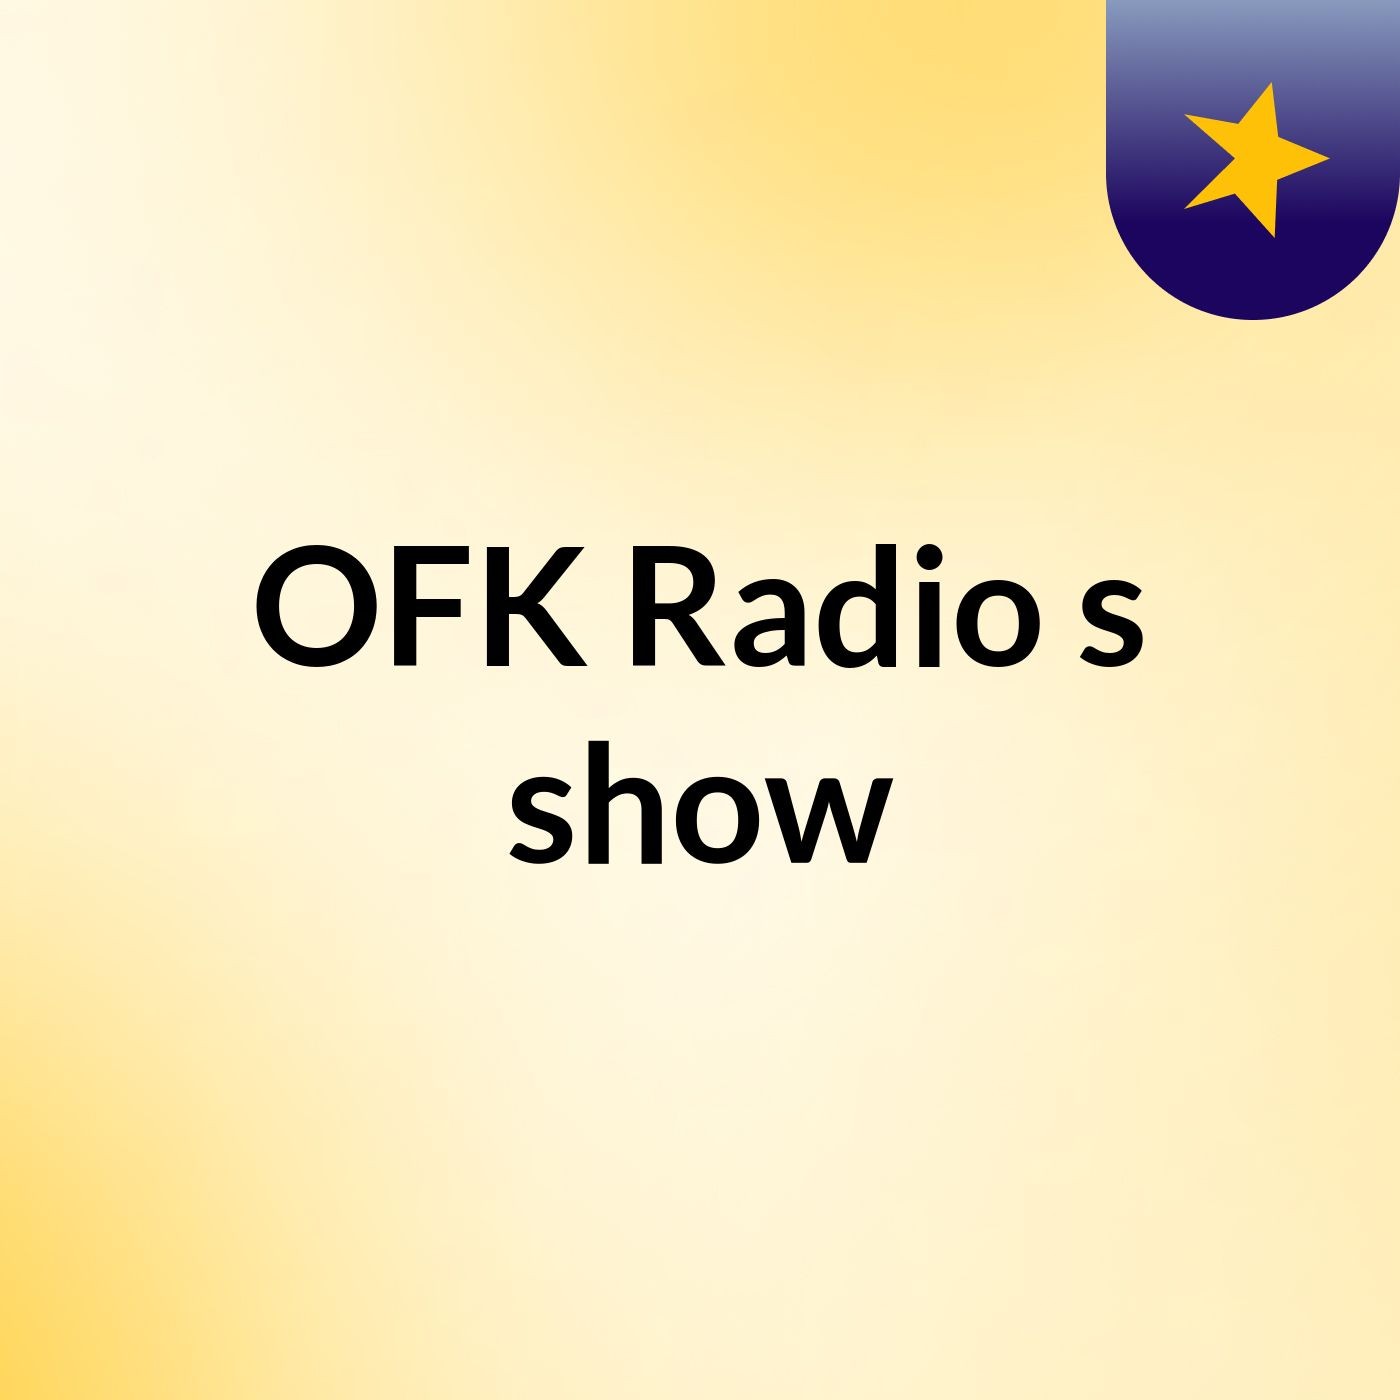 OFK Radio's show